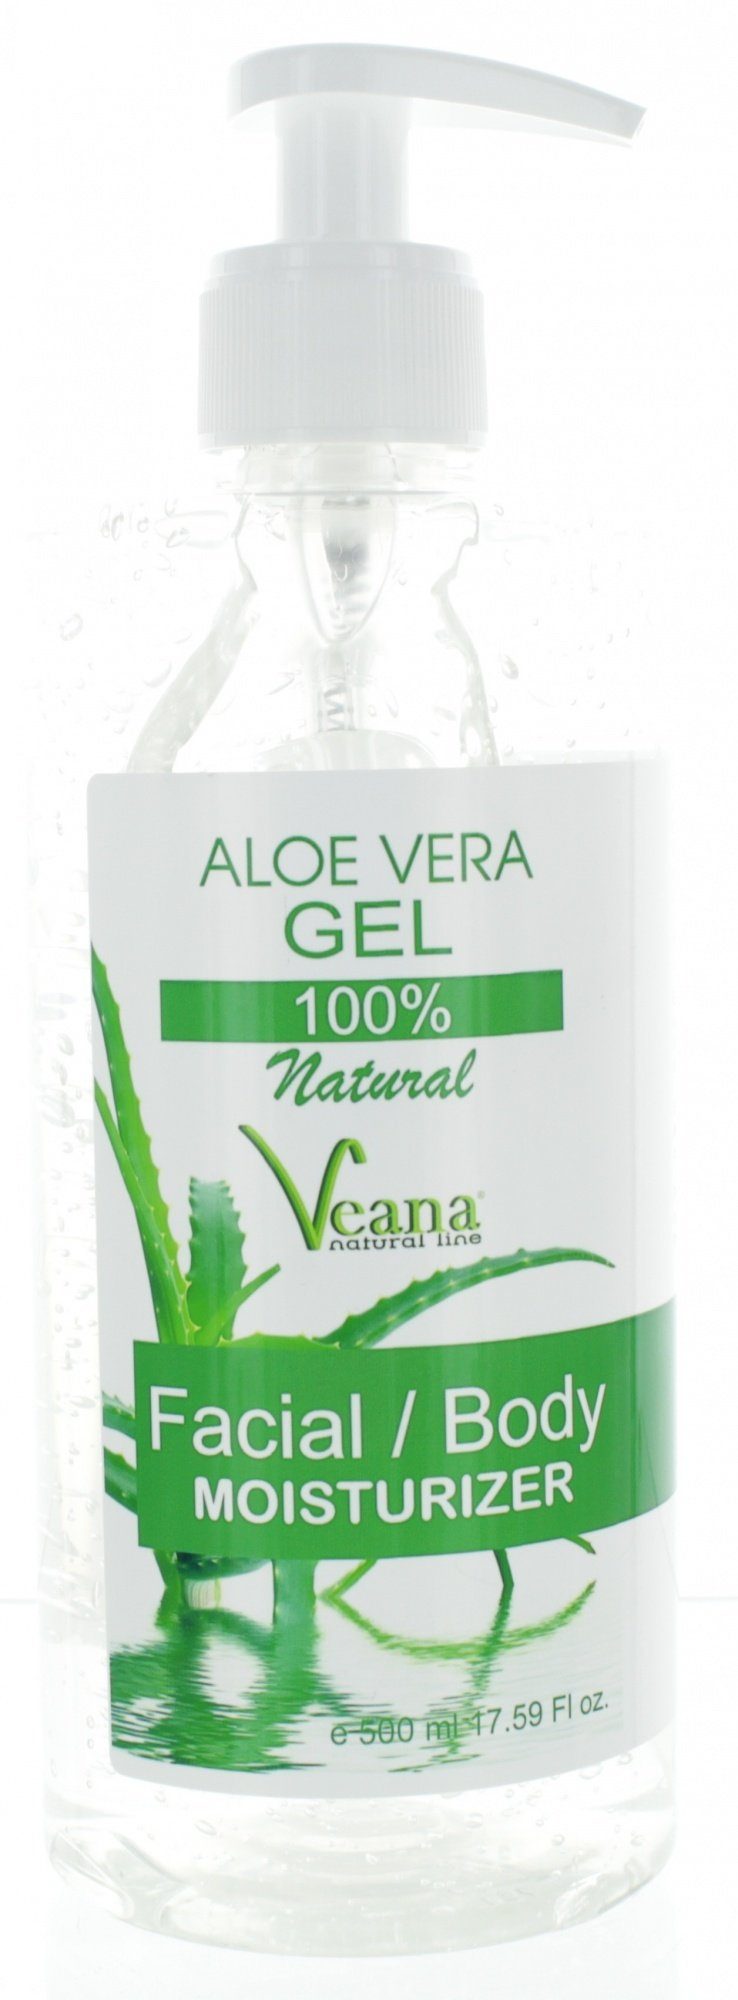 Veana Körperpflegemittel Aloe Vera Gel 100% natural (500ml) gegen  Sonnenbrand, Entzündungen und Insektenstiche, wirksam bei Akne, Rosacea,  Neurodermitis und Schuppenflechte - PREMIUM Qualität - made in Europe